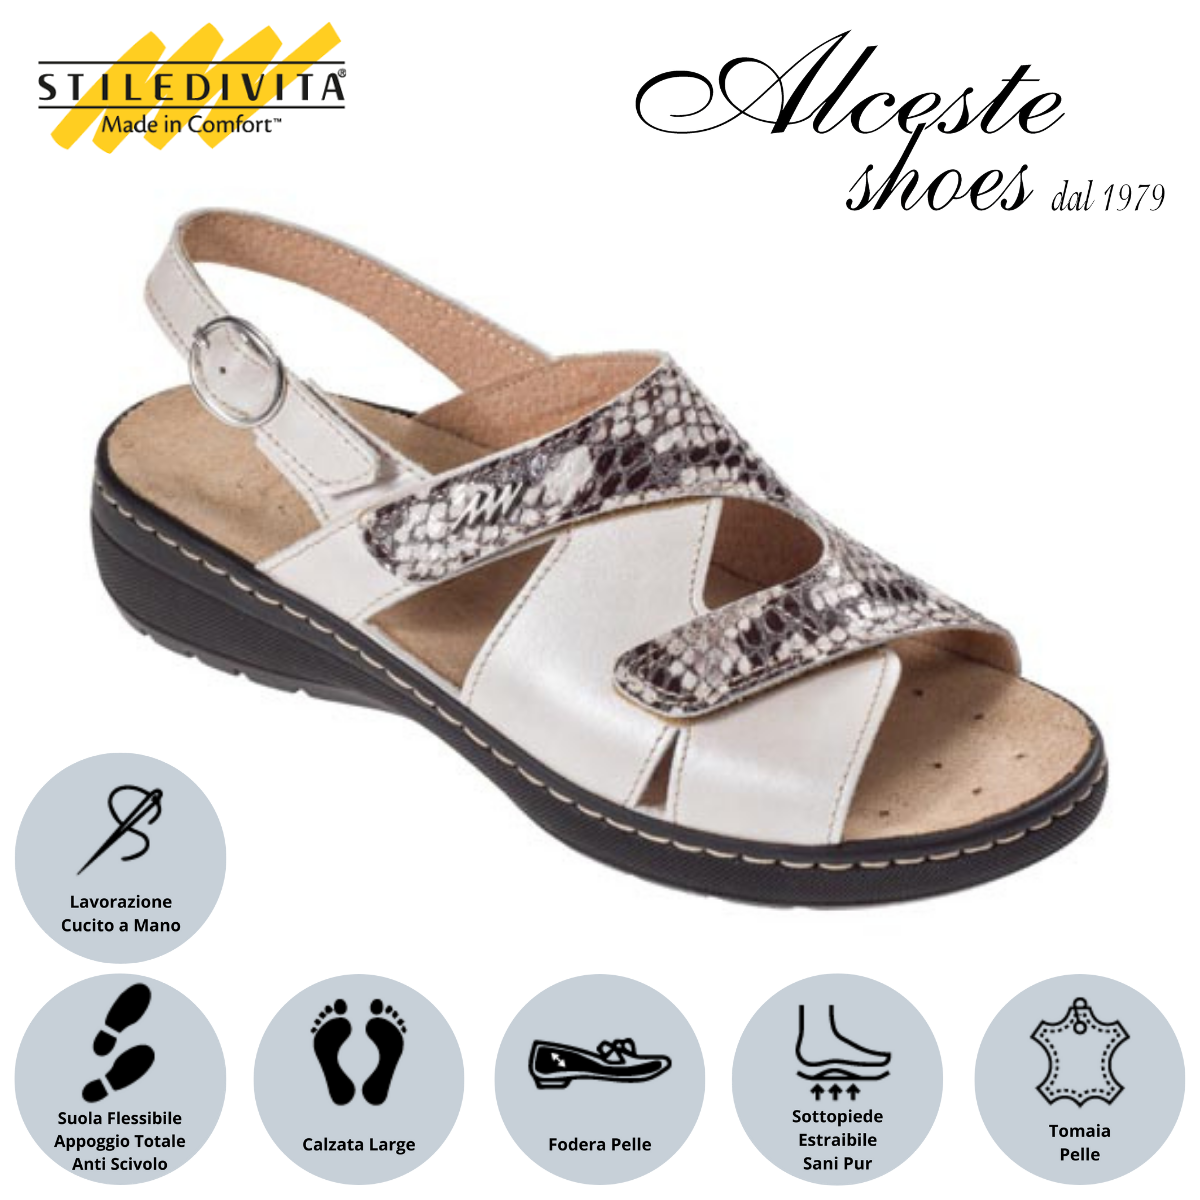 Sandalo con Strappi e Sottopiede Estraibile "Stiledivita" Art. 8195 Pelle Cipria e Stampa Pitone Roccia Alceste Shoes 11 3